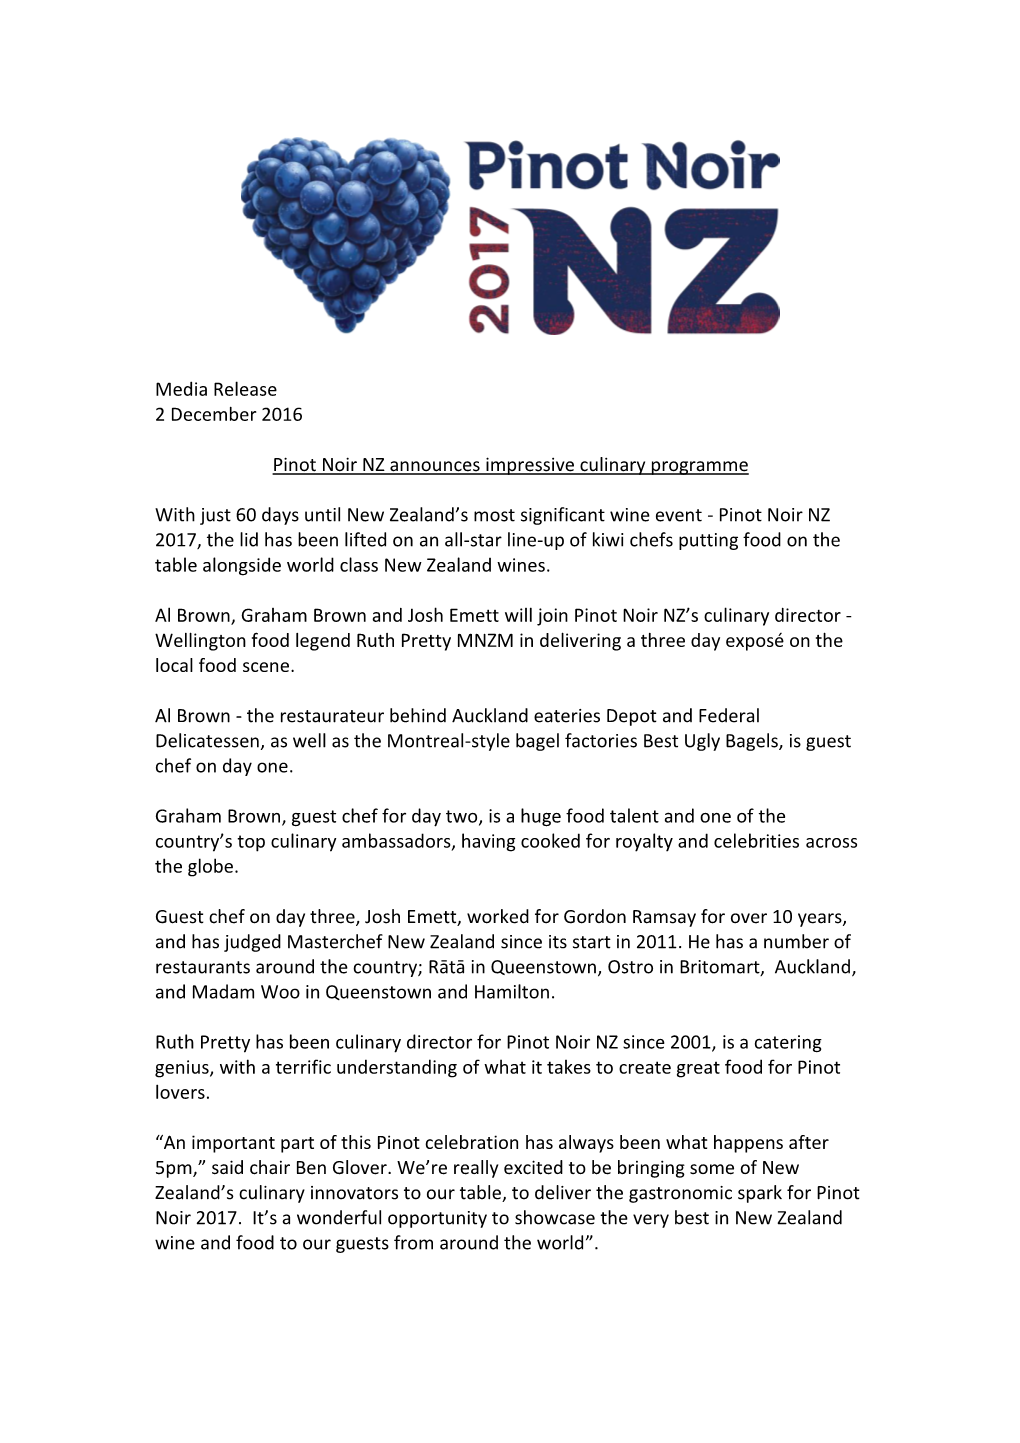 Pinot Noir NZ Announces Impressive Culinary Programme